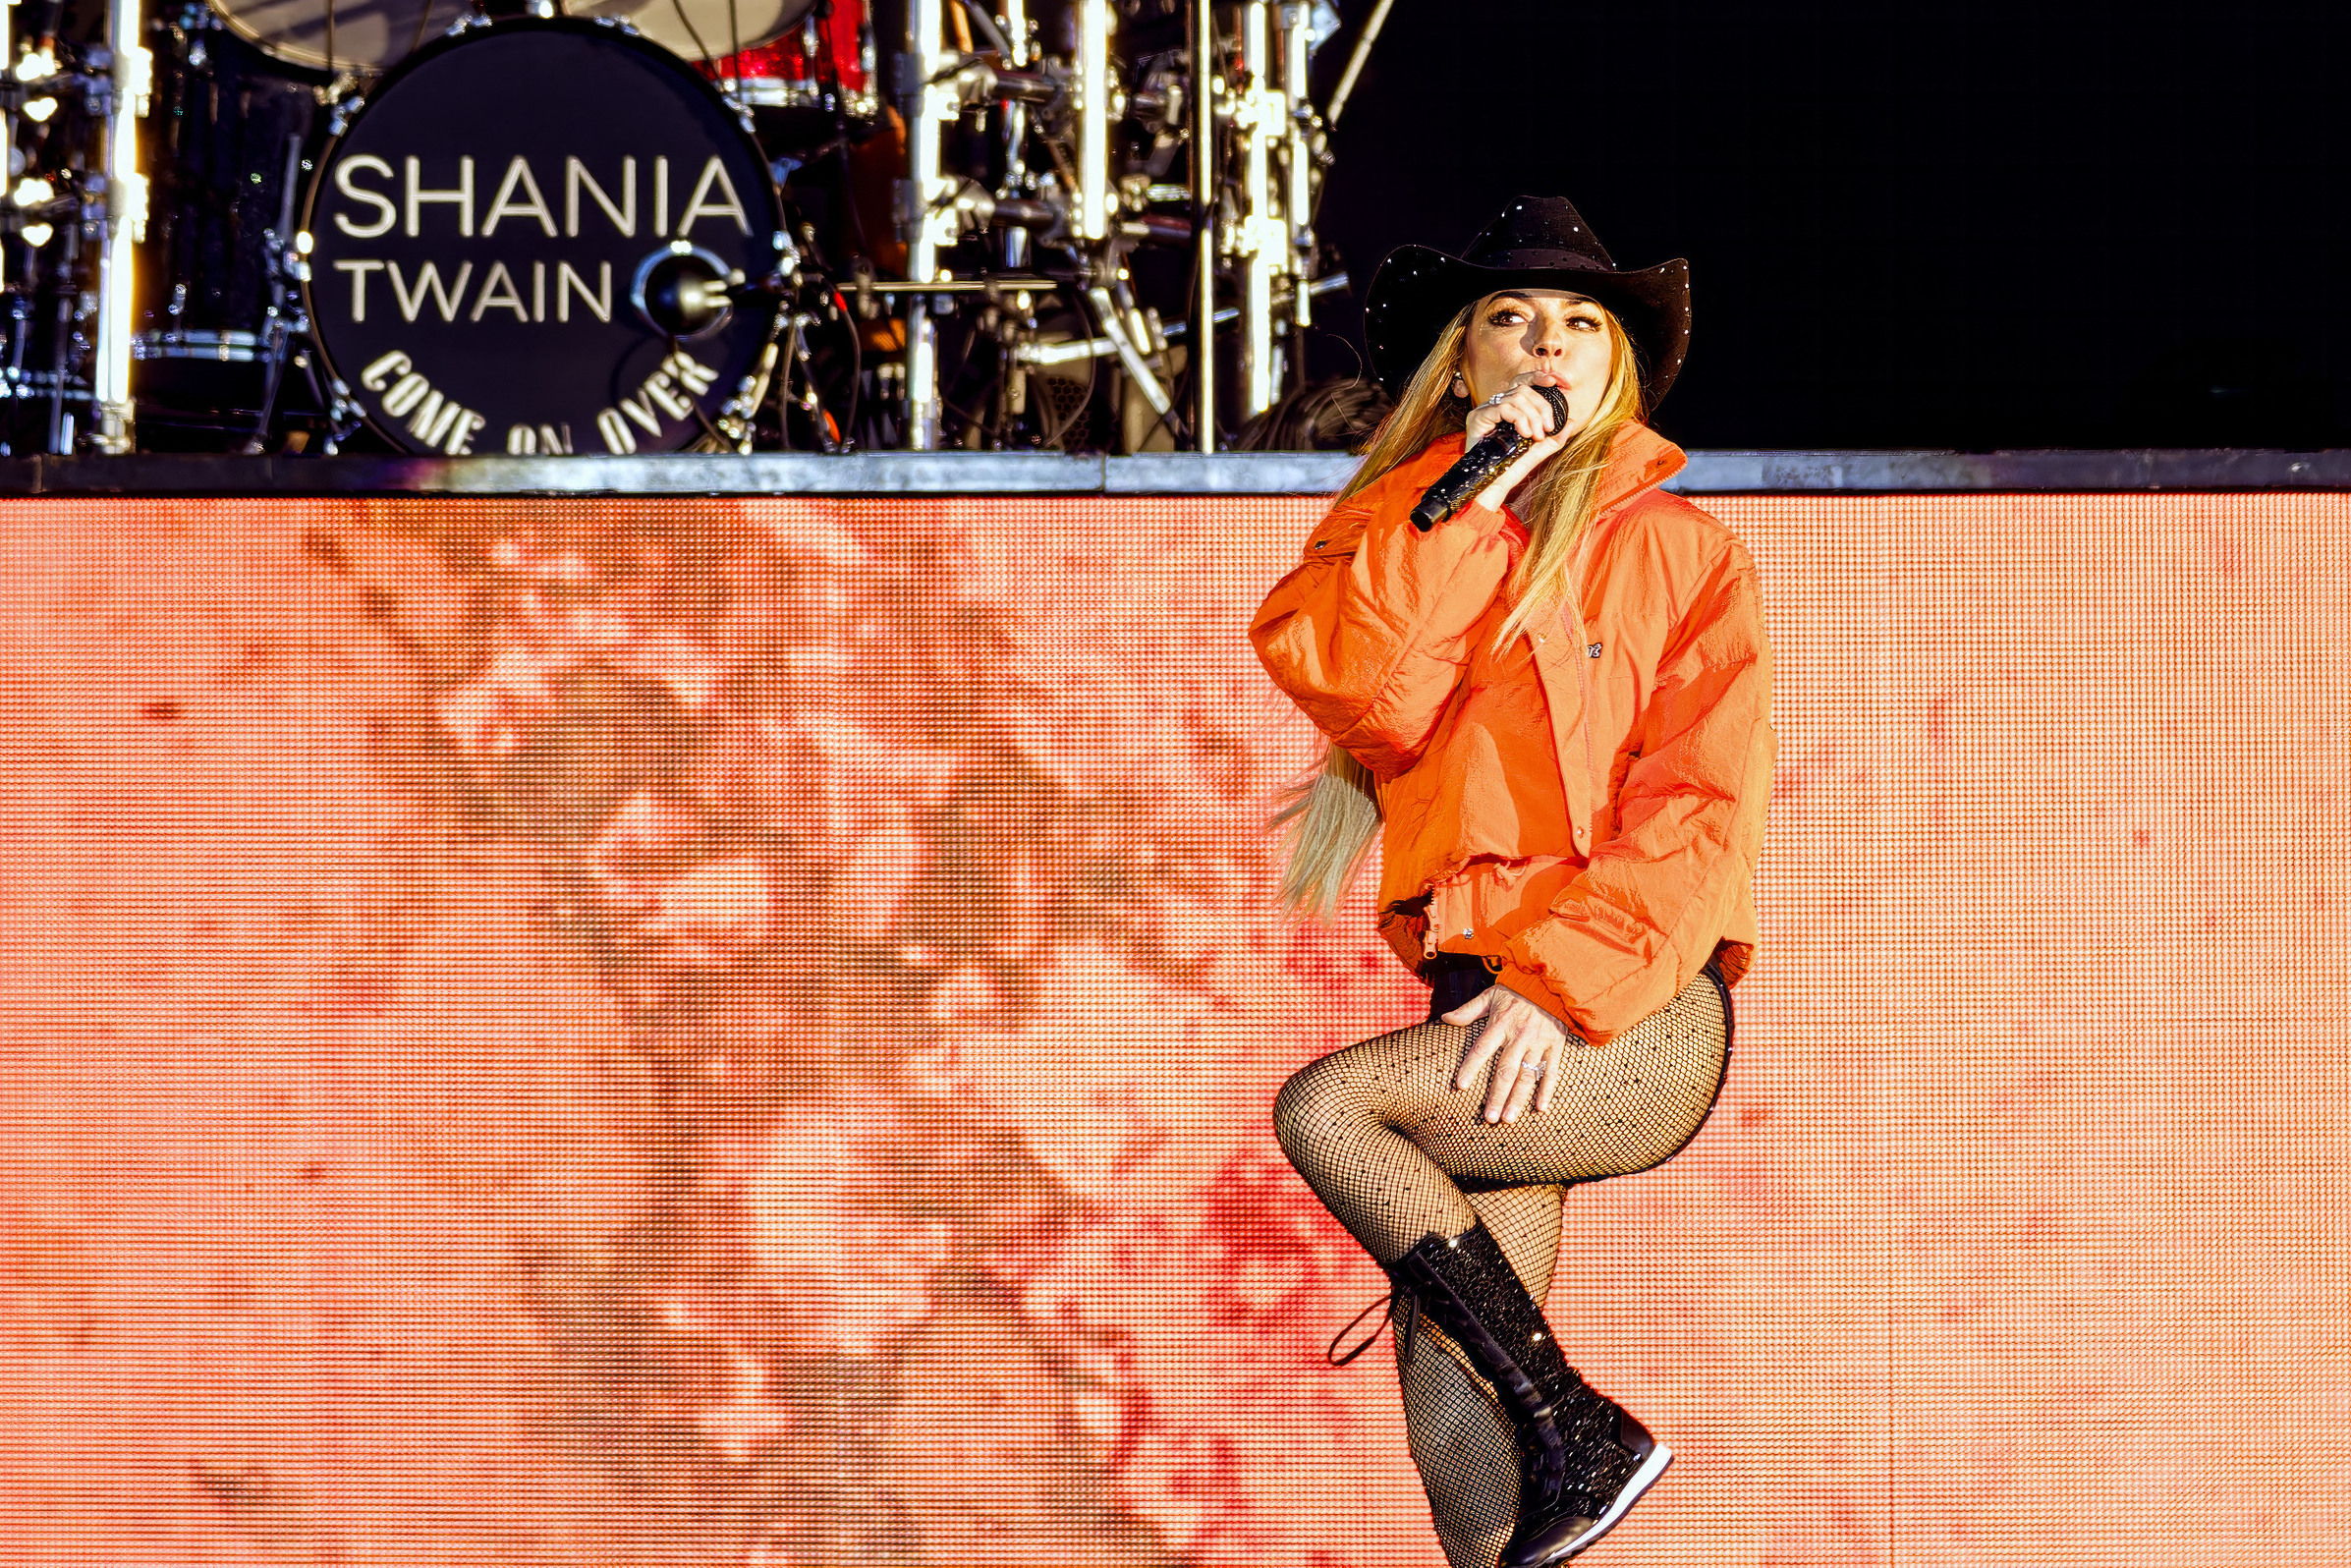 Shania Twain performing at Lytham Festival